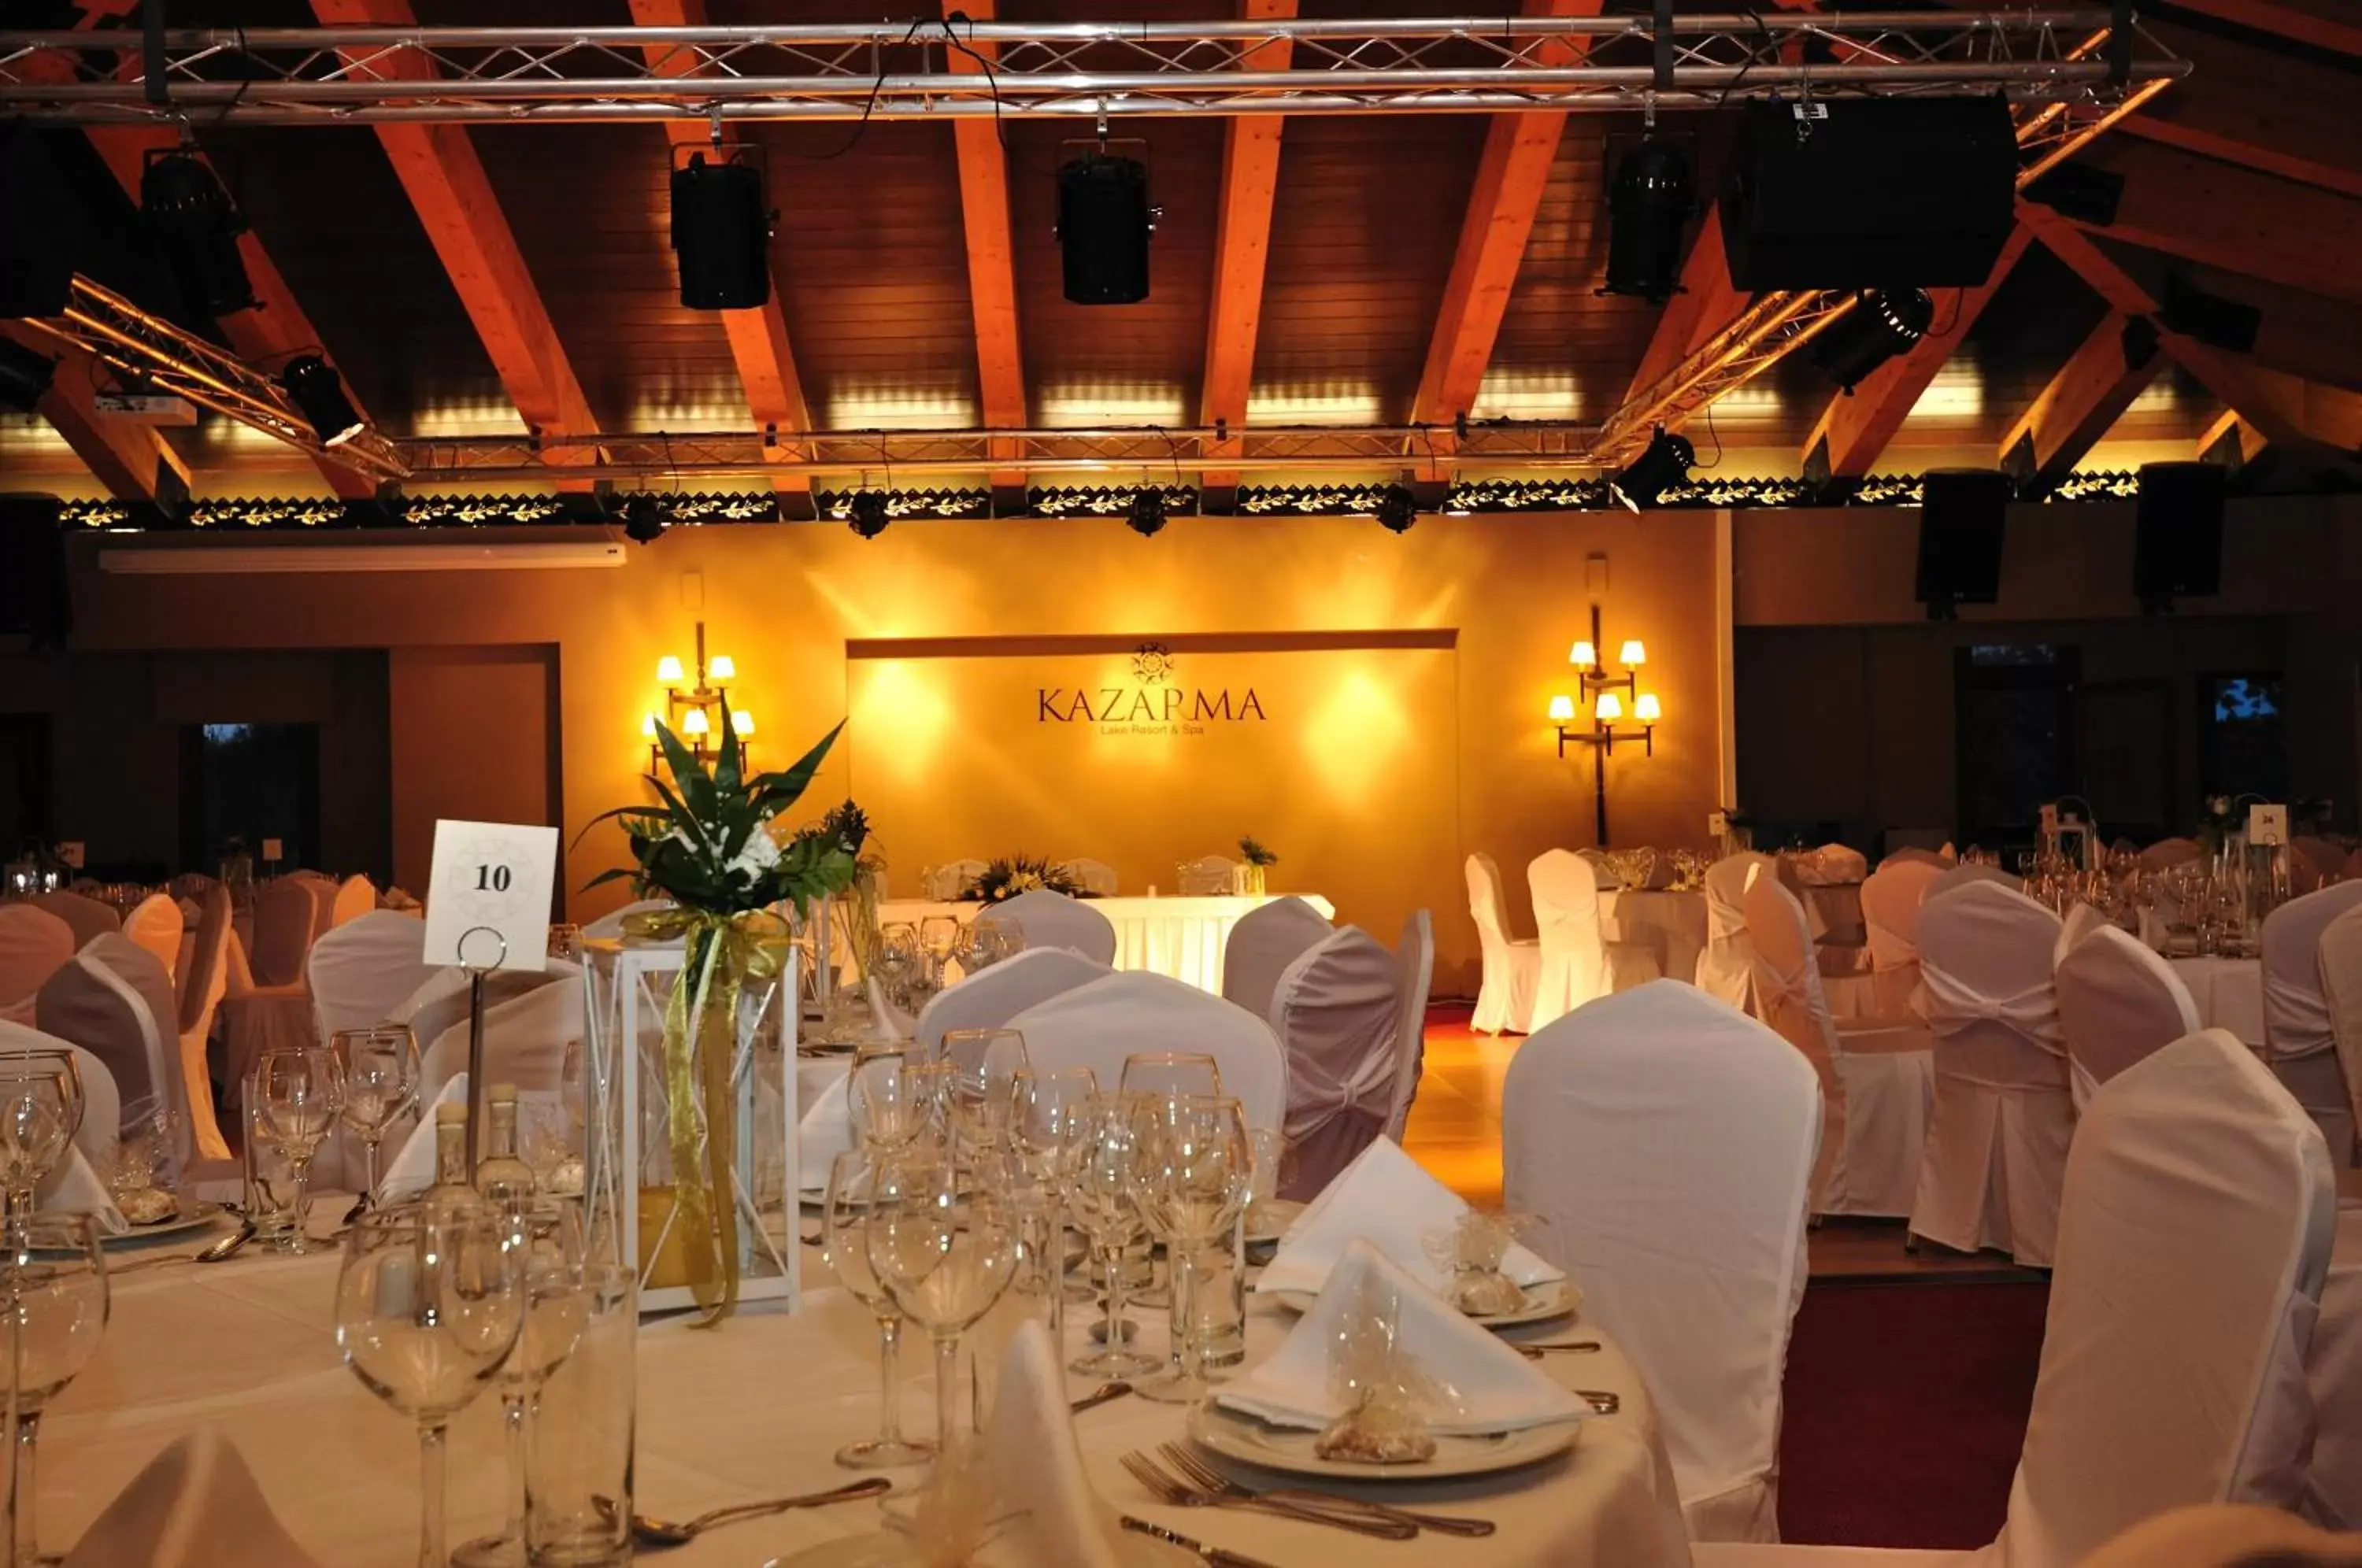 Banquet/Function facilities, Banquet Facilities in Kazarma Hotel